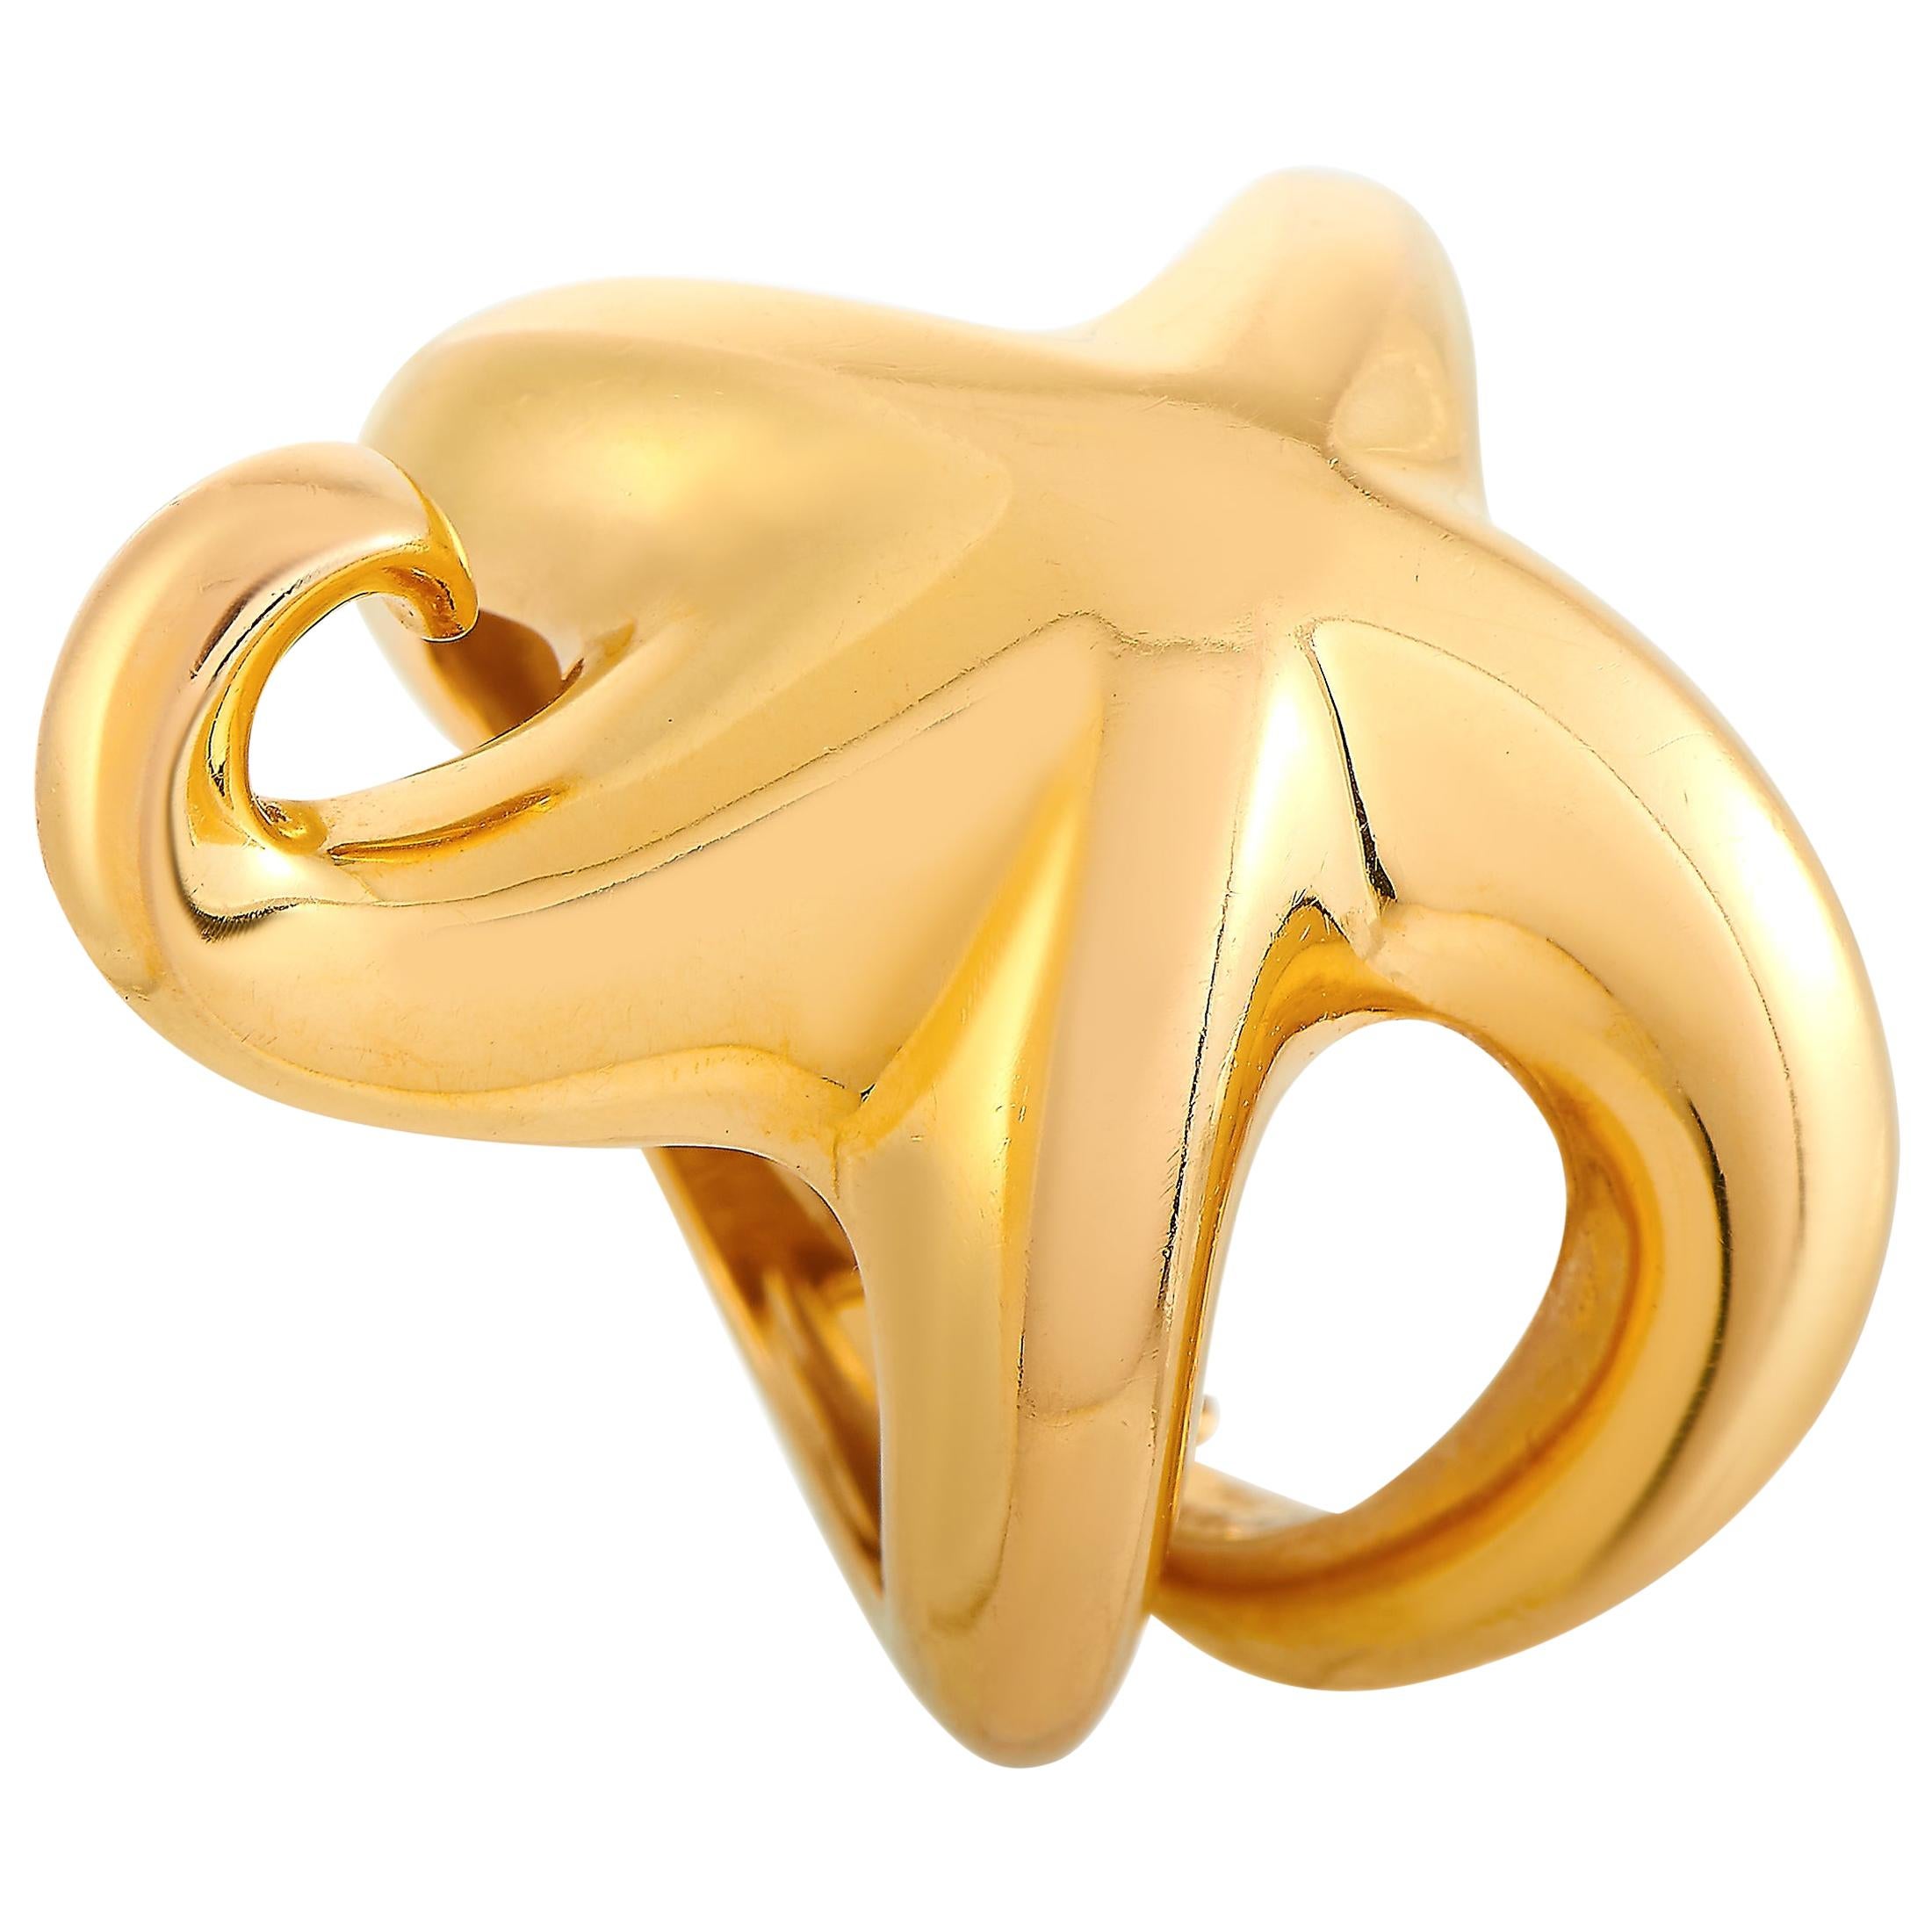 Boucheron 18 Karat Yellow Gold Ring